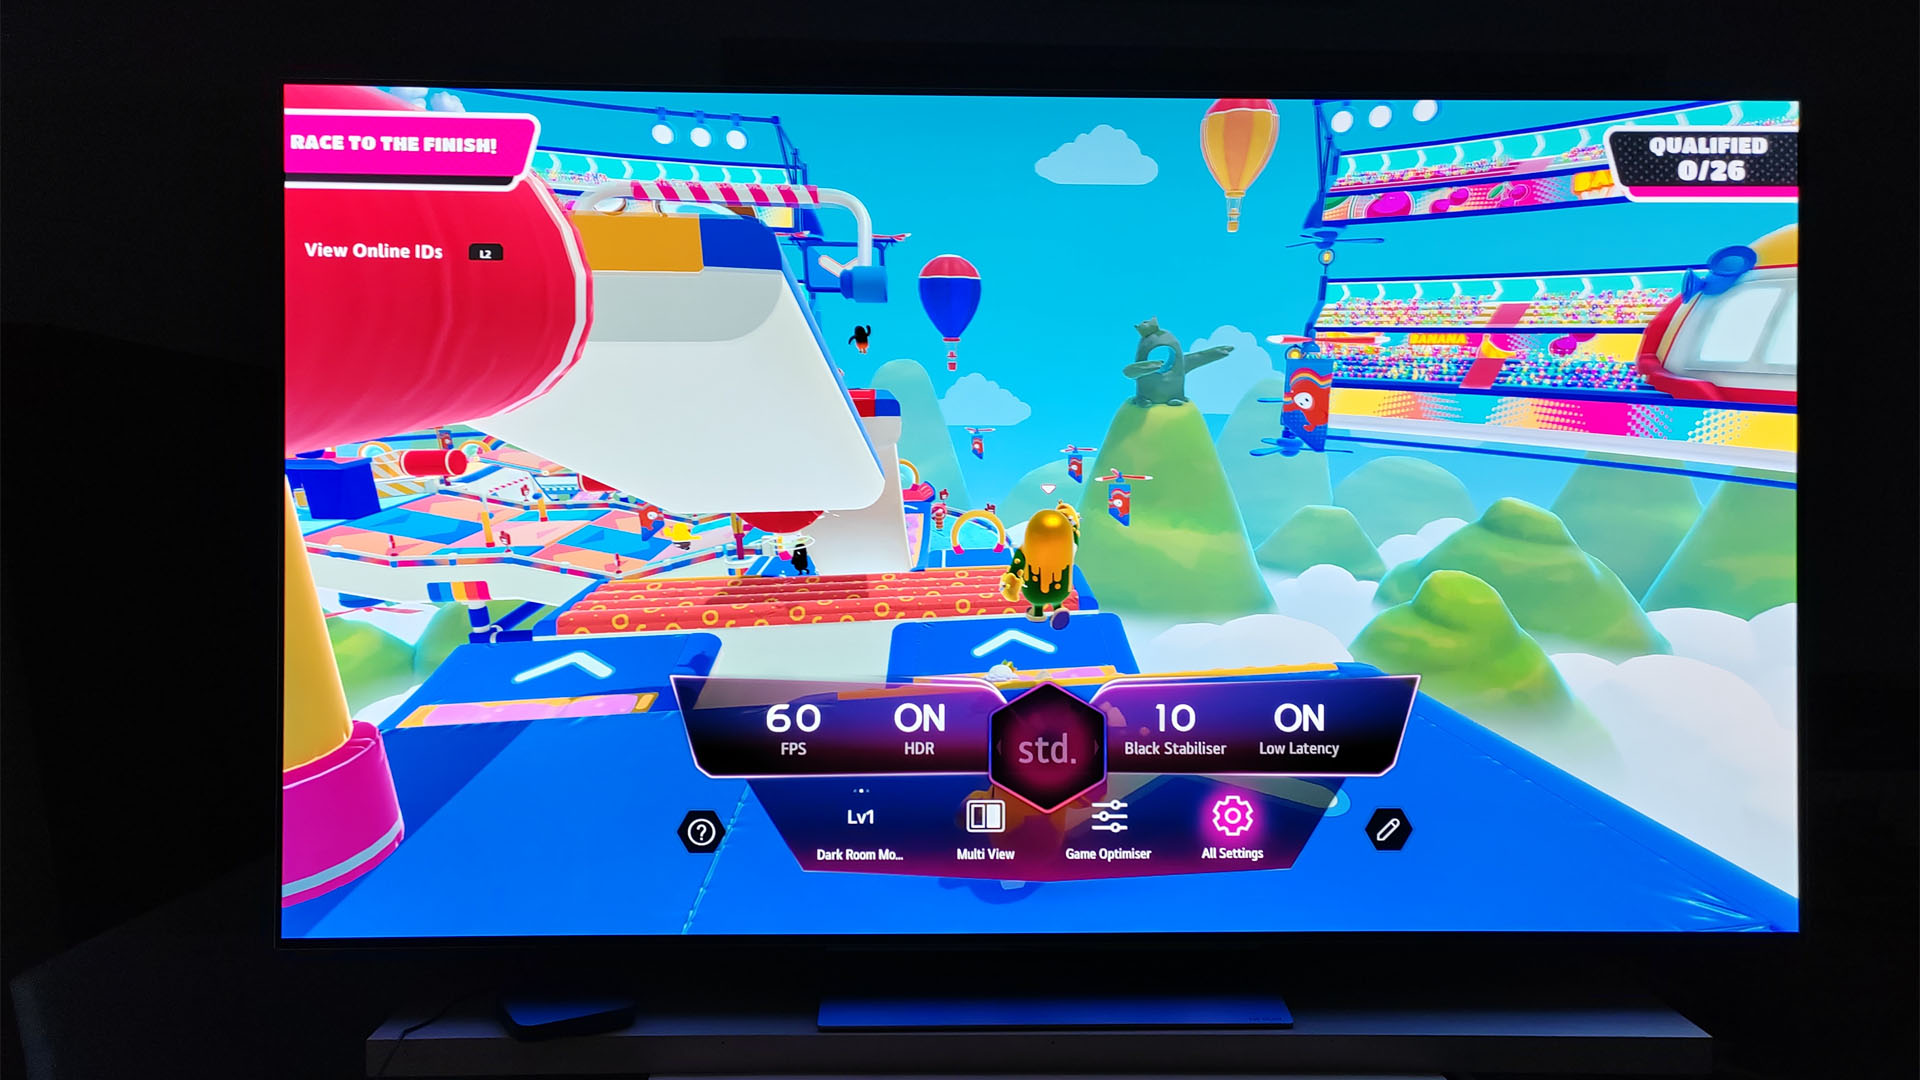 Interface utilisateur en jeu de LG OLED G3 montrant un résumé de ses fonctionnalités et paramètres de joueur - affiché sur un jeu de gars d'automne